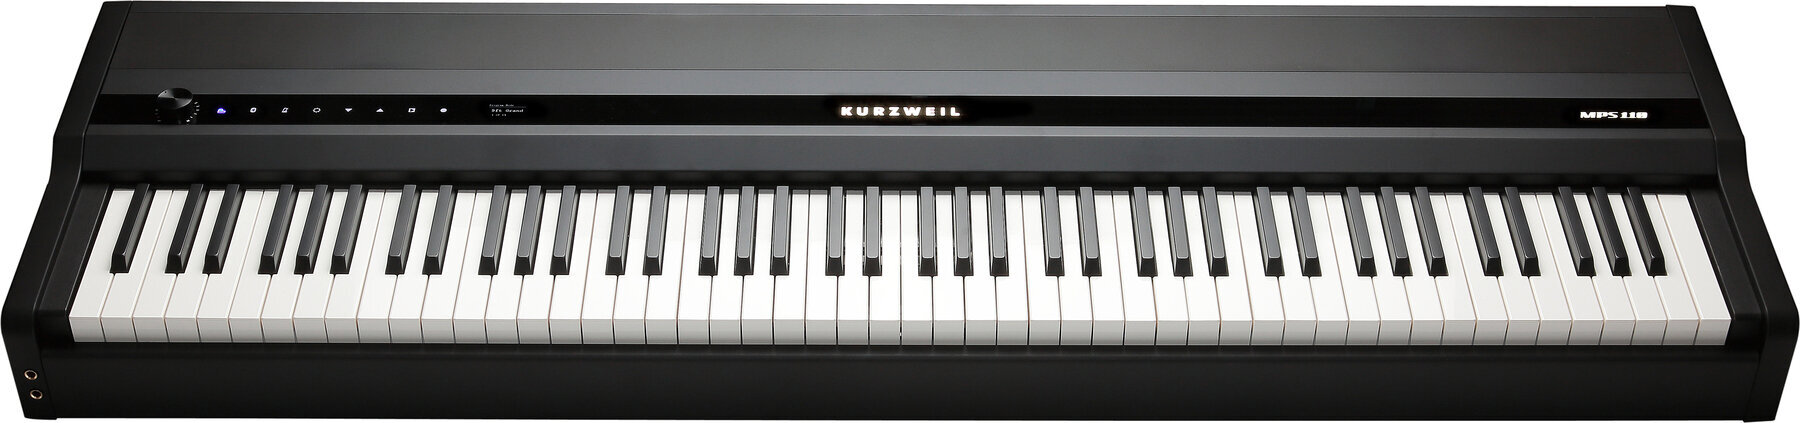 Színpadi zongora Kurzweil MPS110 Színpadi zongora